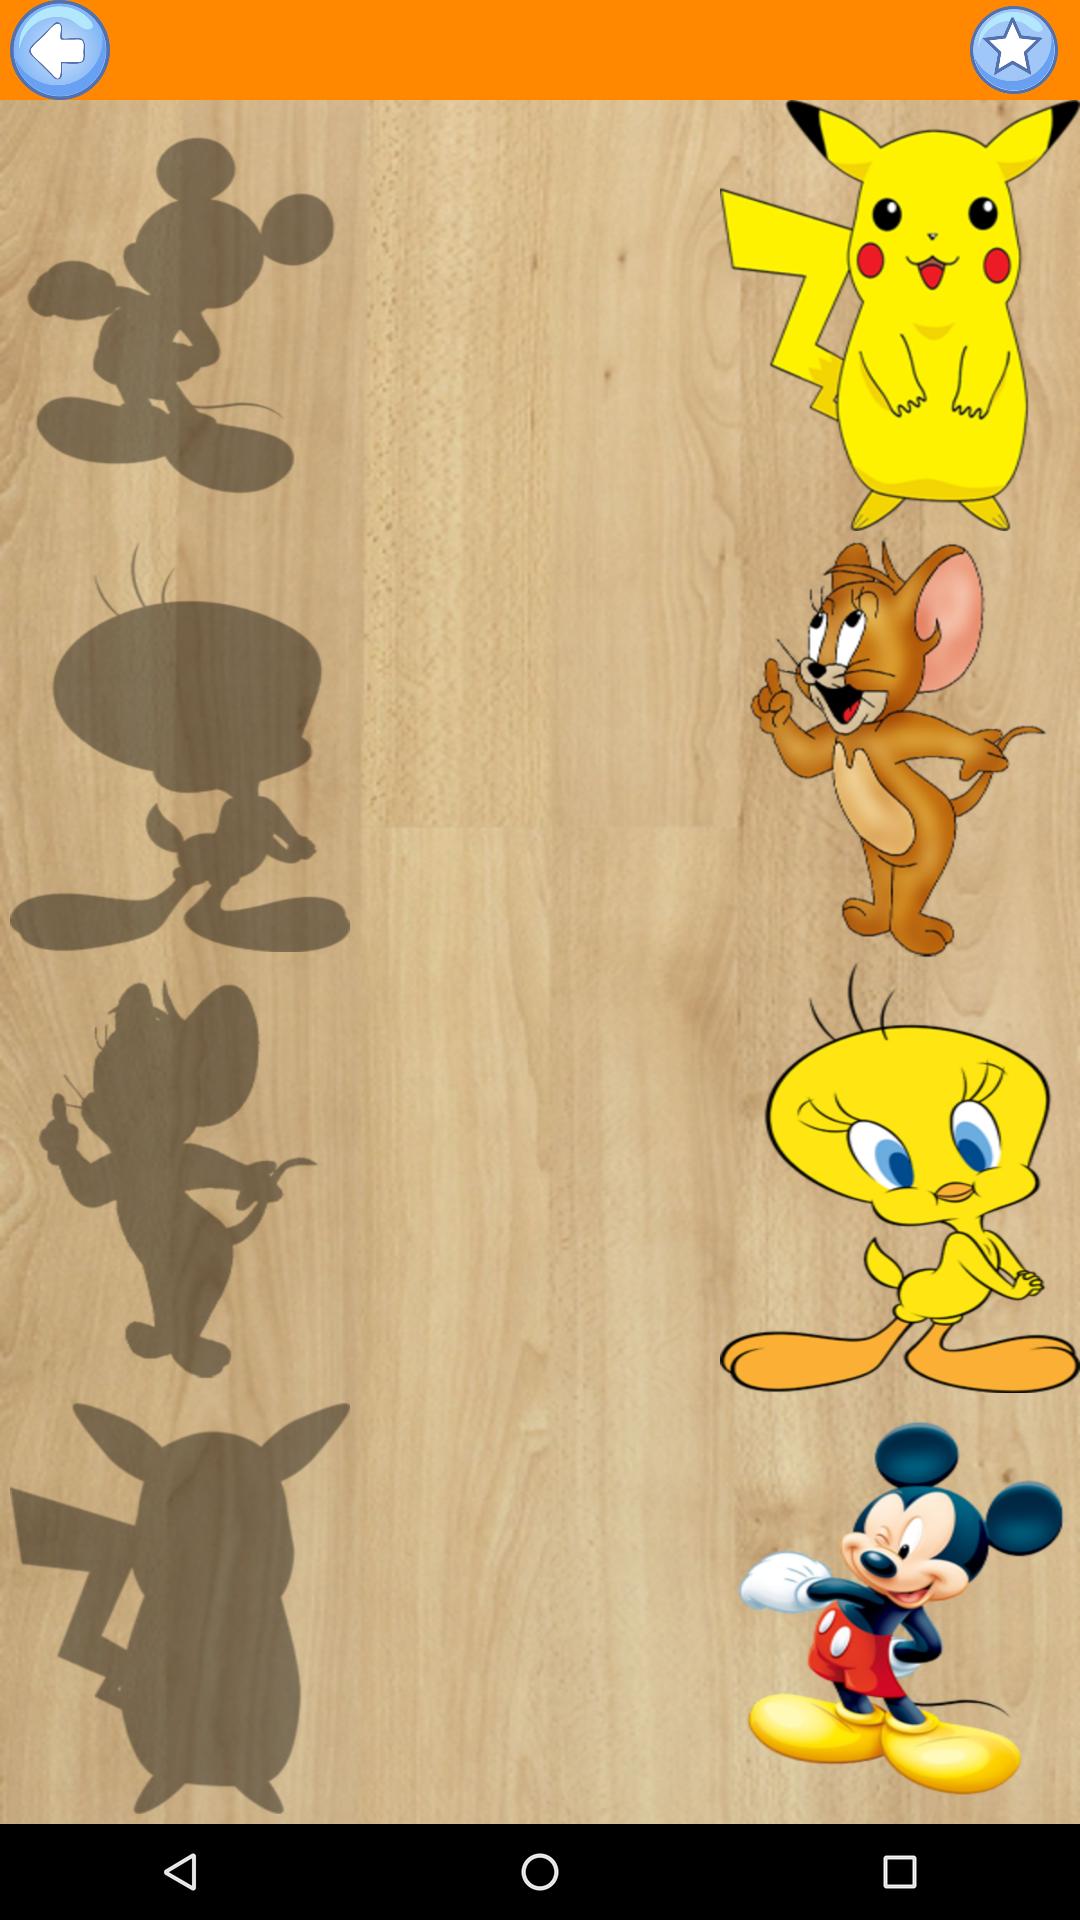 تعليم الاطفال - تركيب الصور للأطفال APK voor Android Download